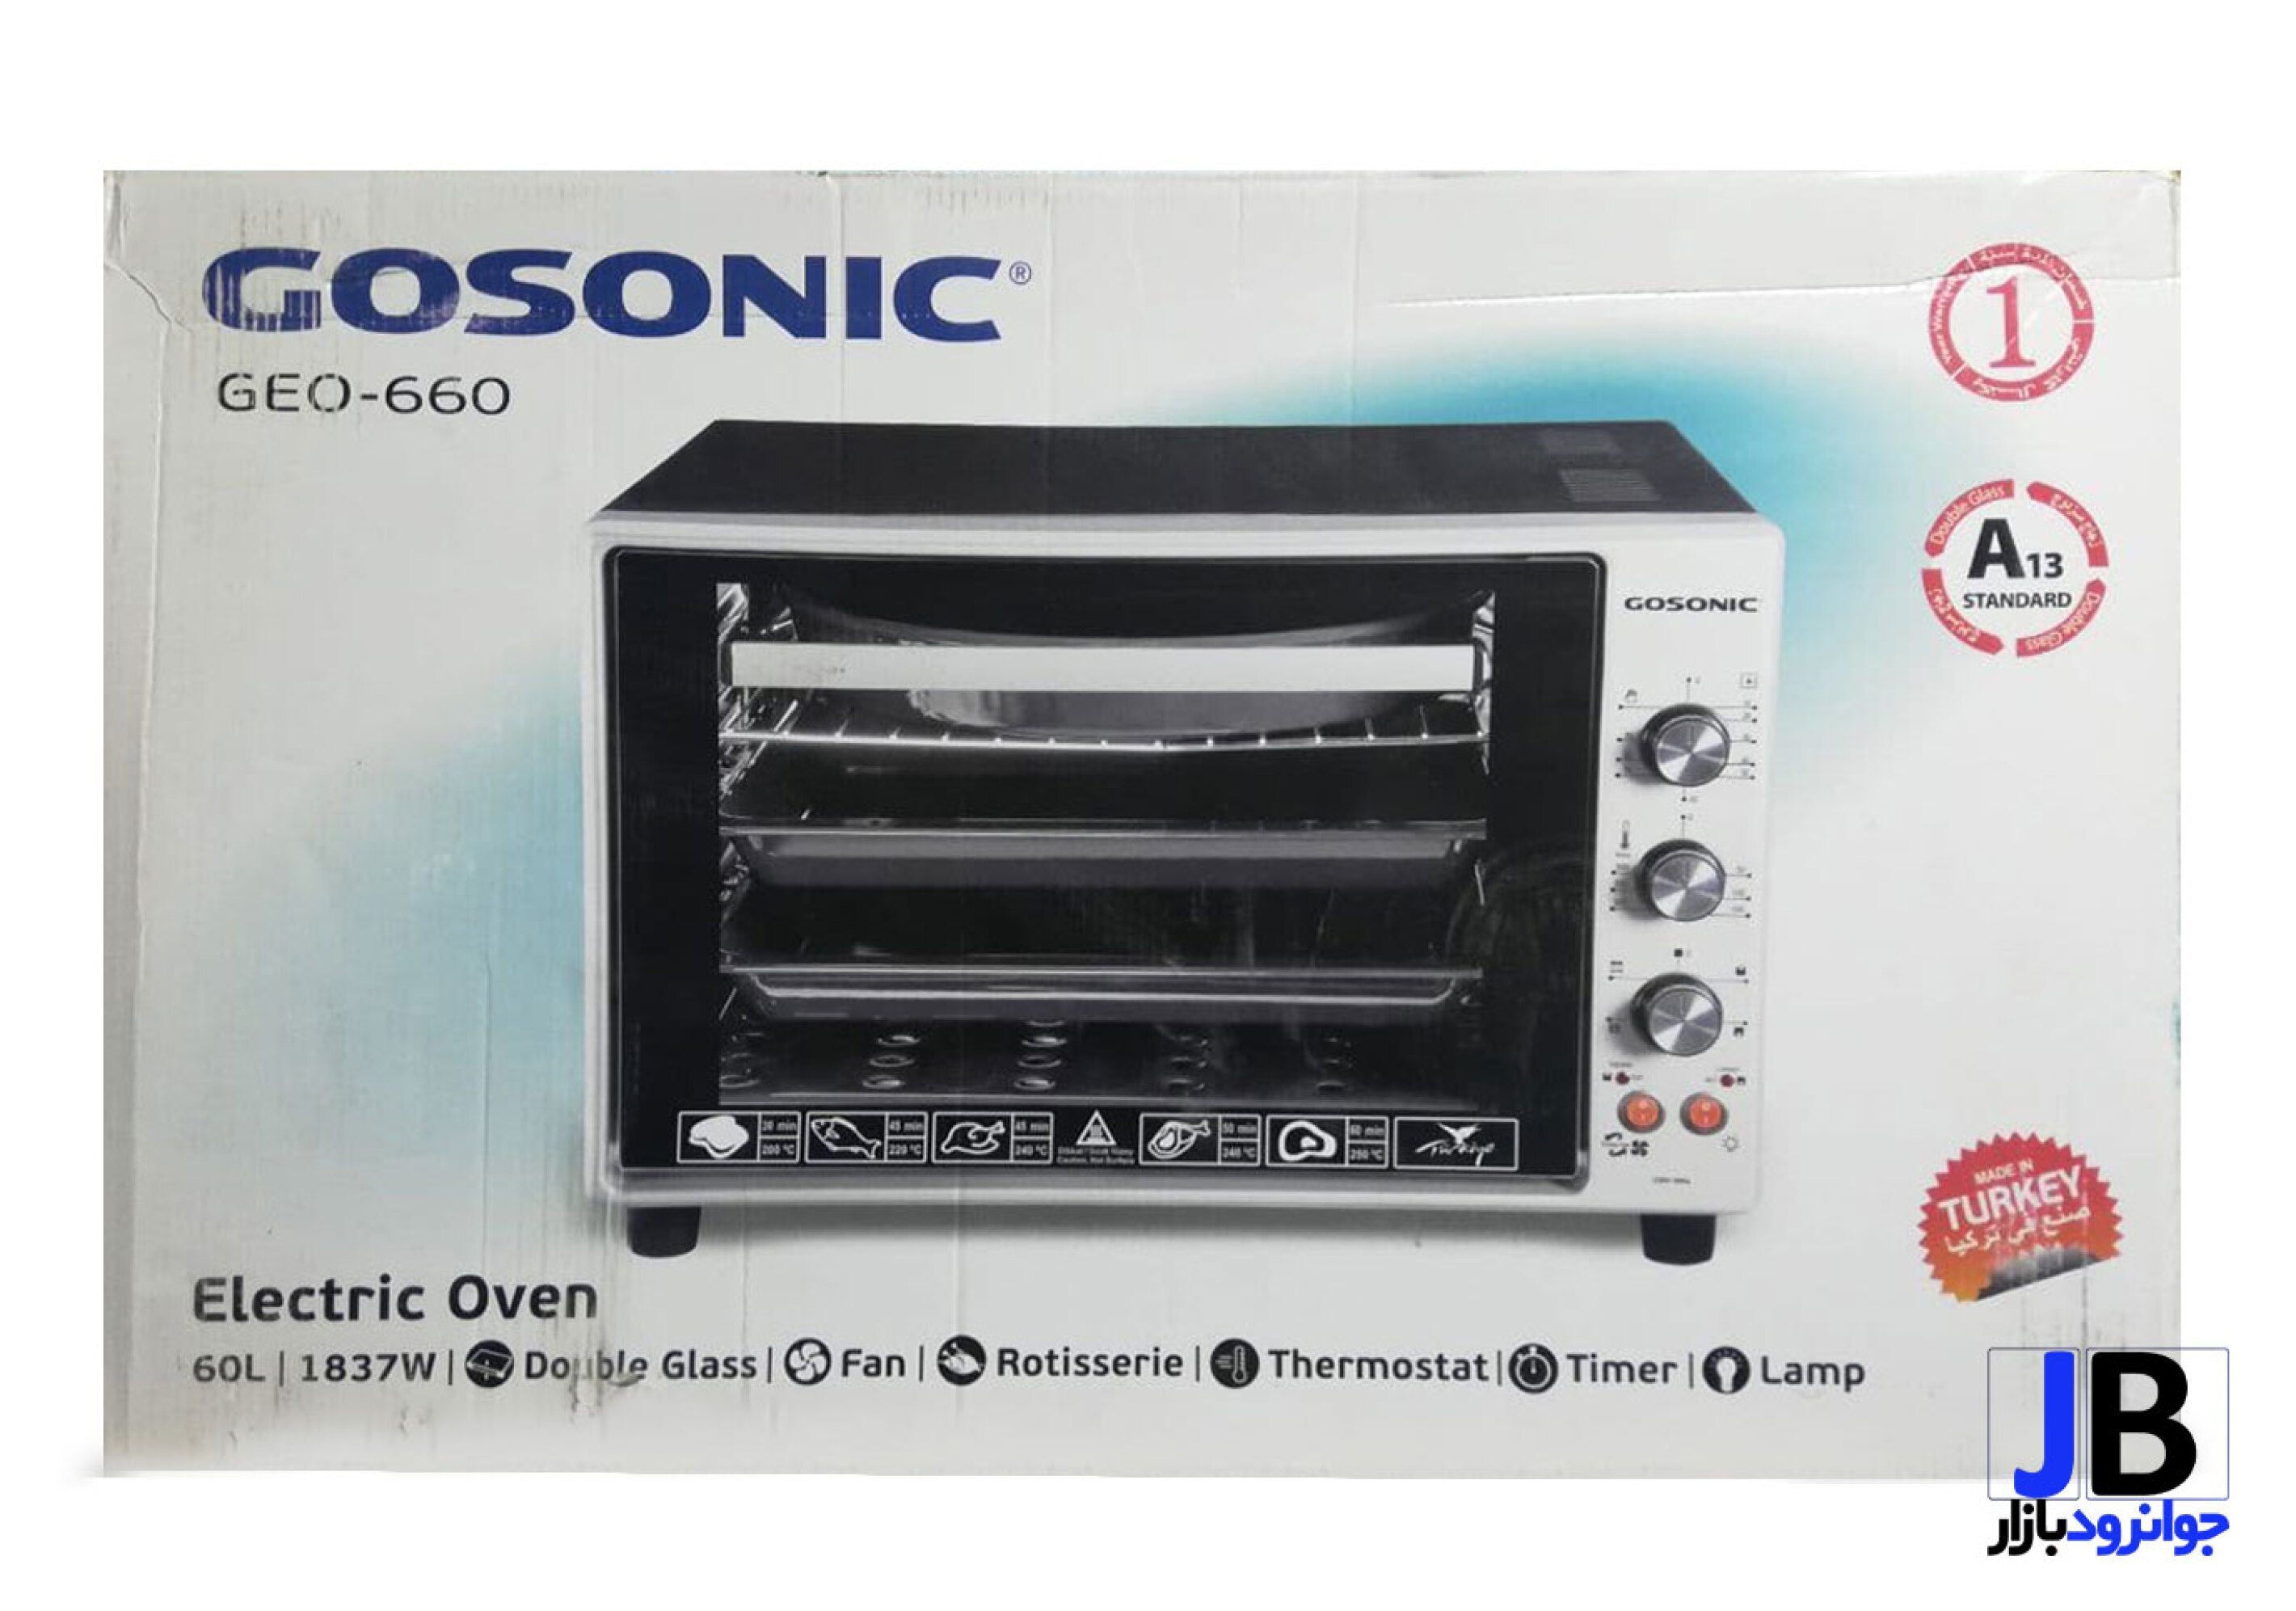  آون توستر گوسونیک مدل Toaster Oven Gosonic Geo-660 